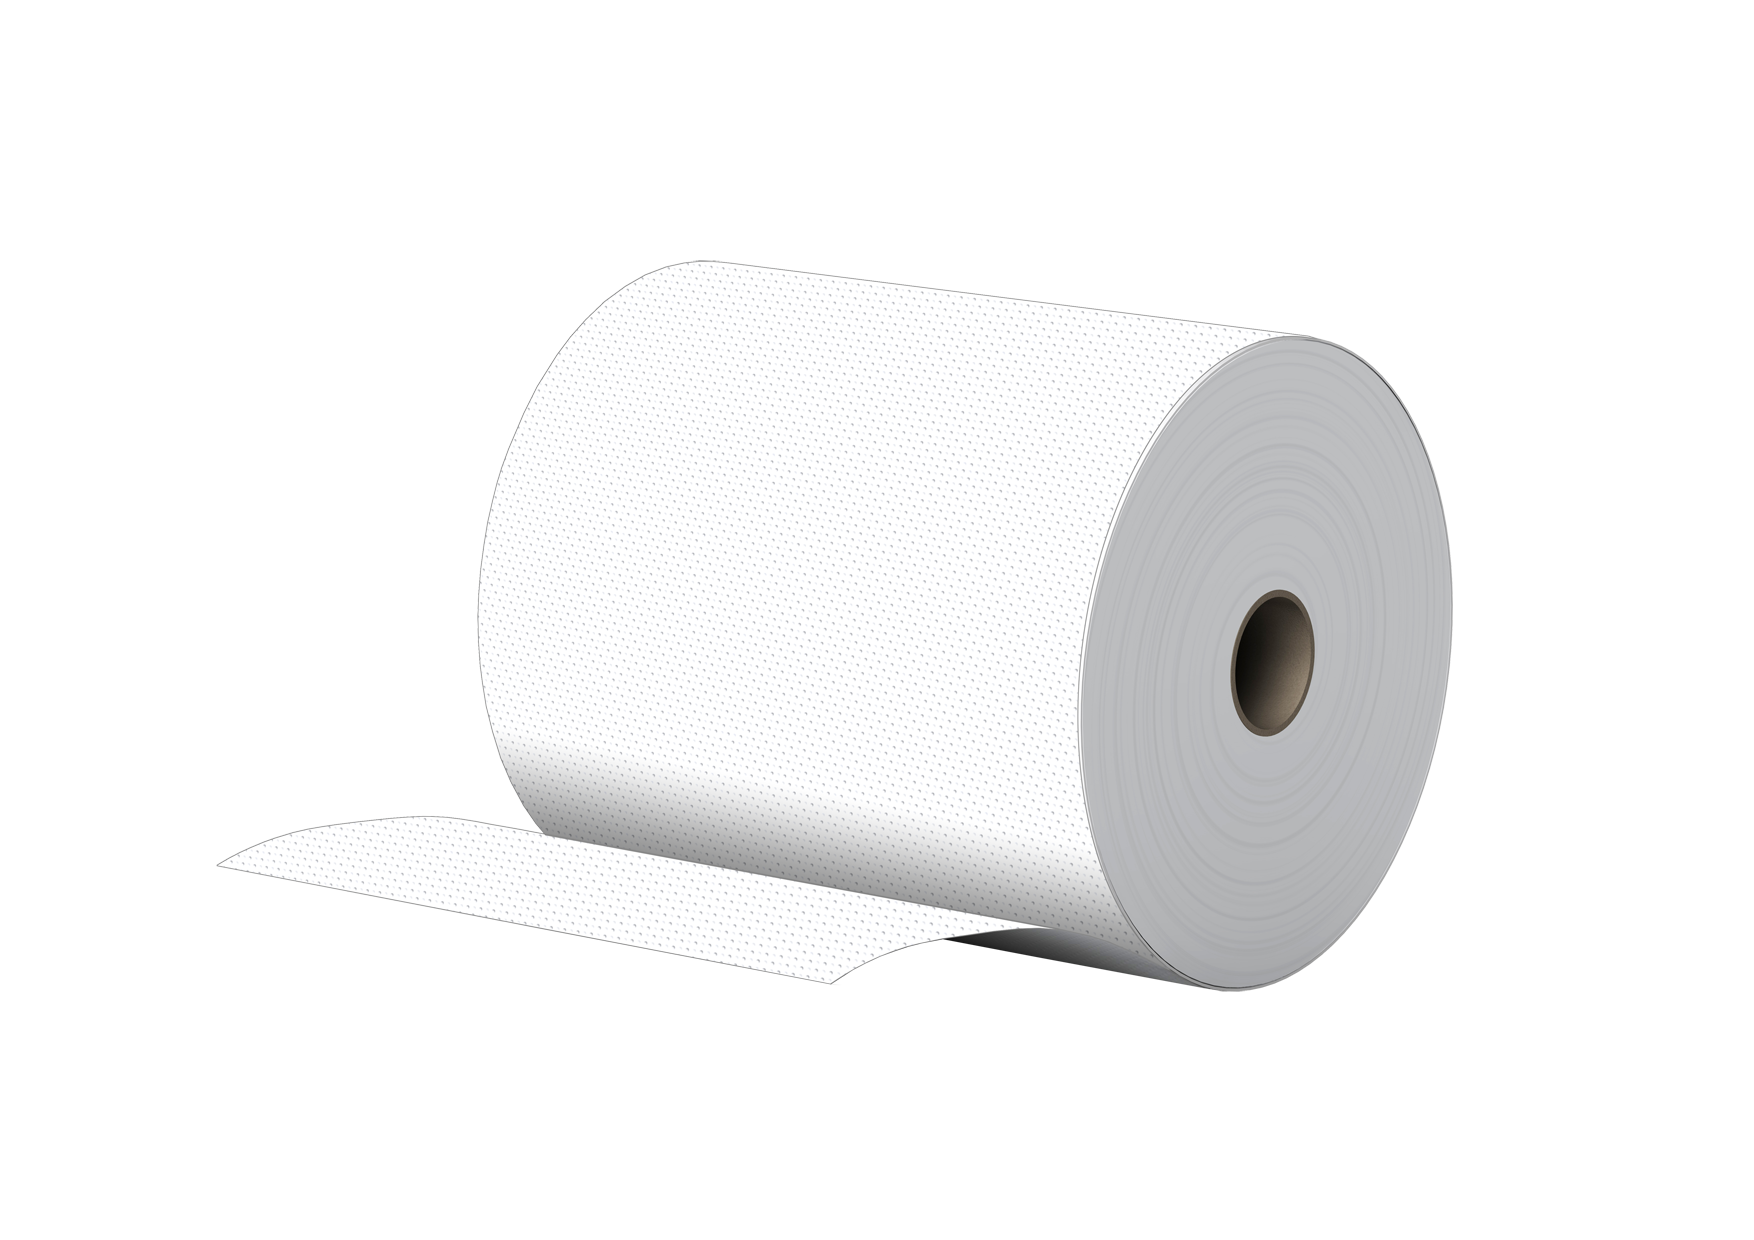 Handtuchpapierrollen 24 Rollen, 3-lagig, Zellstoff, 100m, 20cm Breite, 4cm Hülse